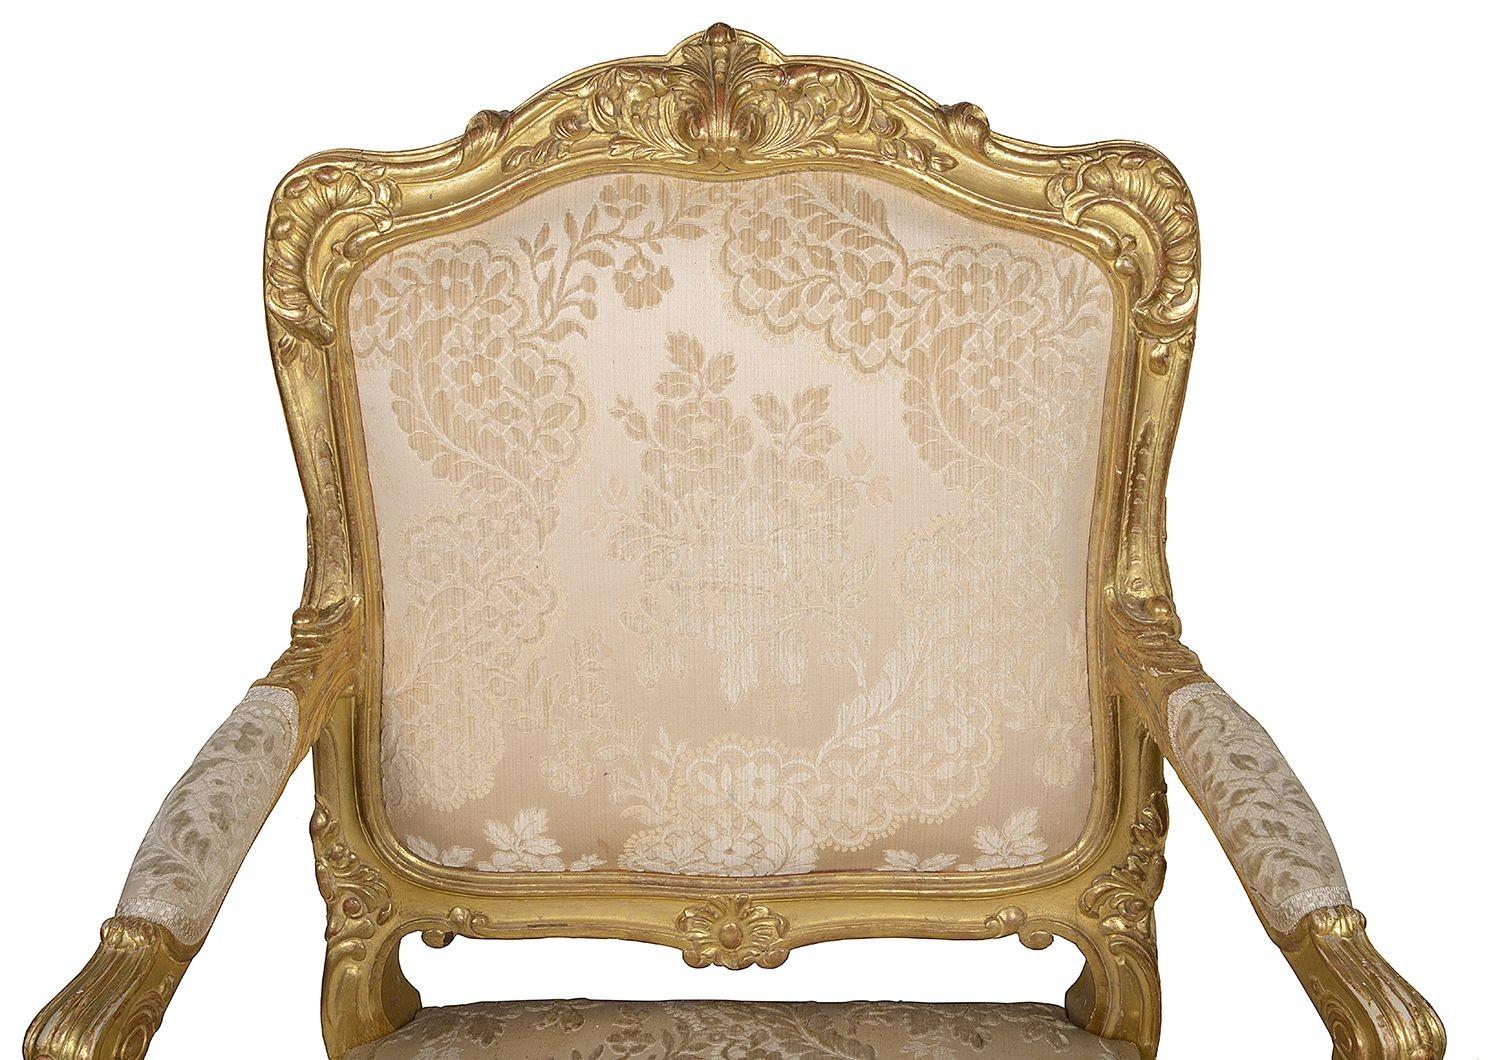 Ein sehr gutes Paar französischer Salonsessel aus geschnitztem Goldholz des späten 19. Jahrhunderts. Jedes mit wunderschönem, blattförmigem Dekor am Schauholzrahmen, gepolstertem Sitz, Rücken und Armlehnen. Auf eleganten geschnitzten Cabriole-Beinen